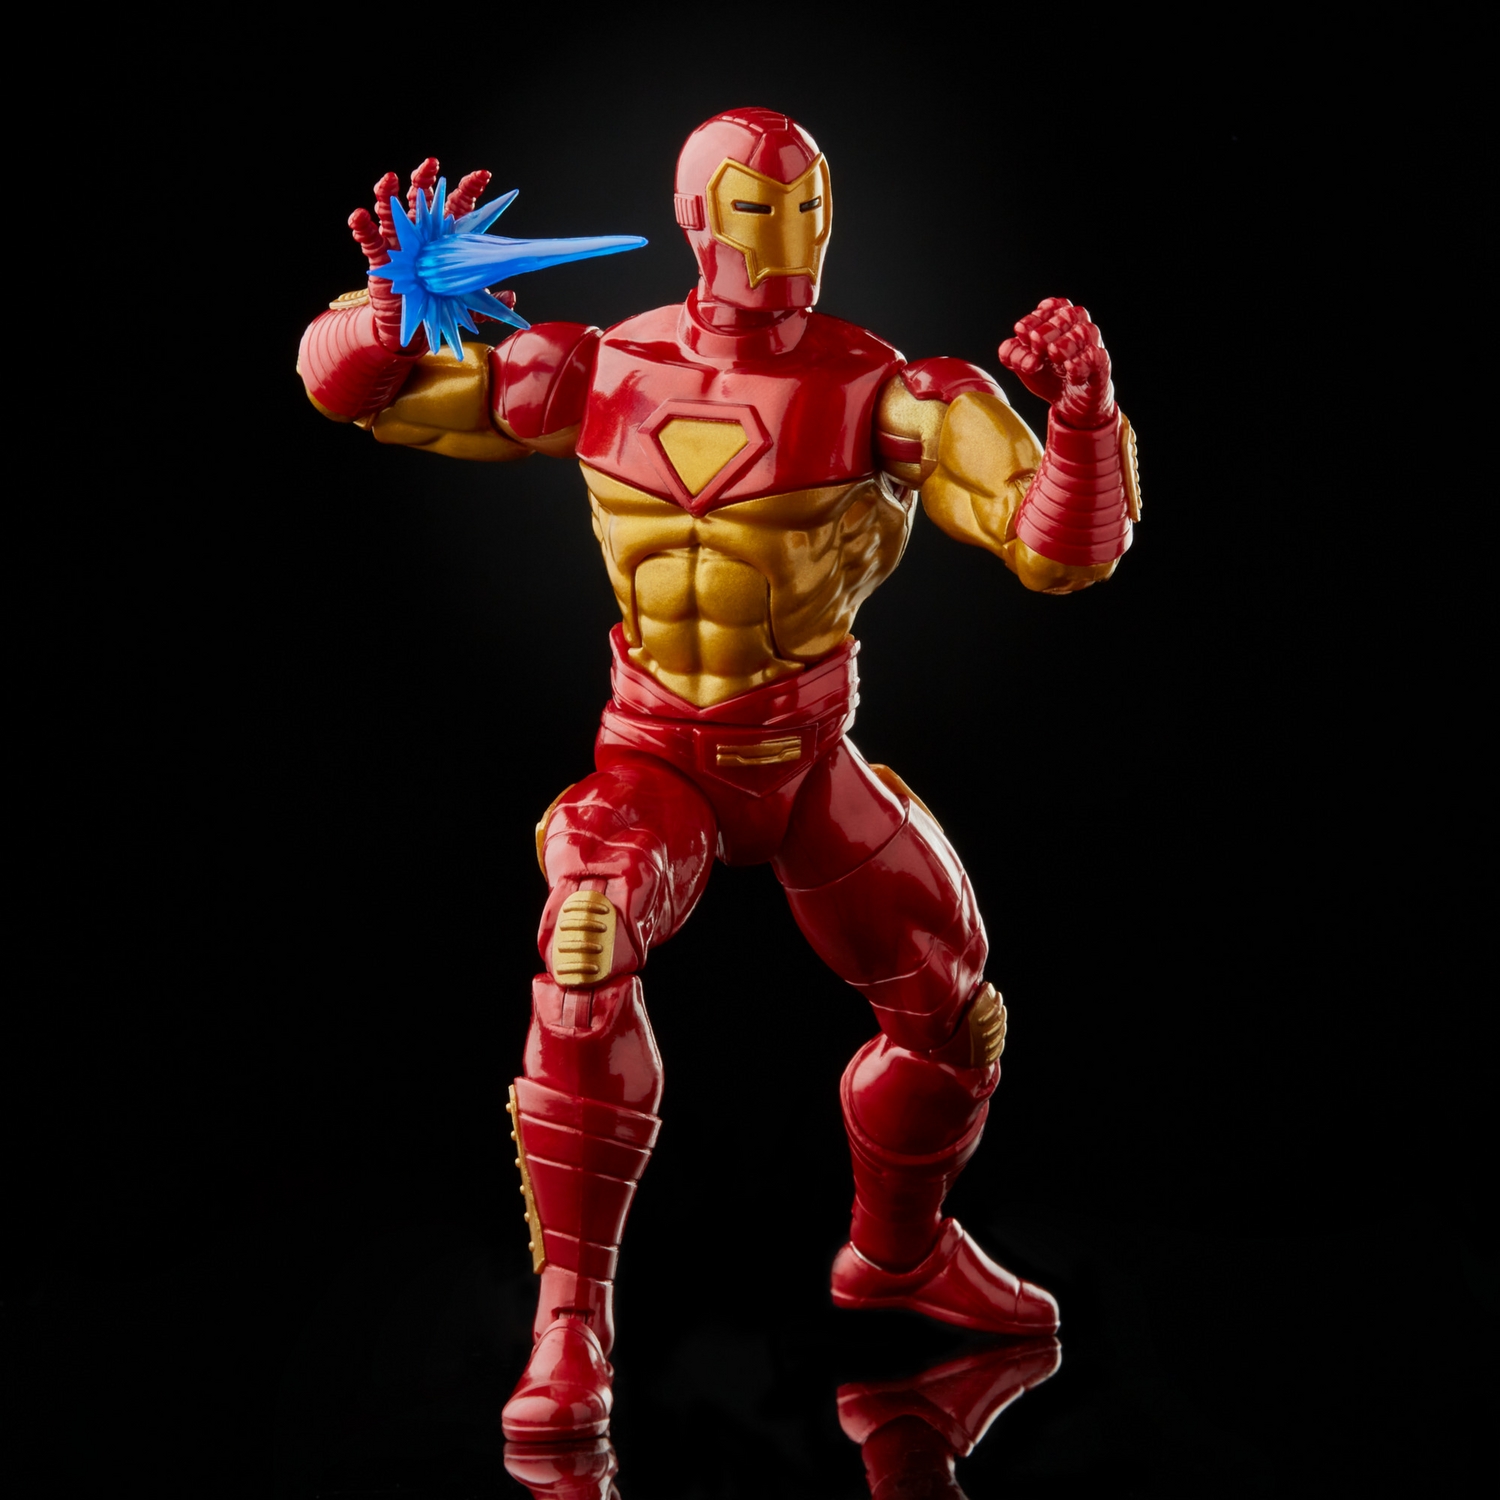 MARVEL LEGENDS SERIES 6-INCH IRON MAN Figure Assortment - Modular Iron Man - oop (5).jpg